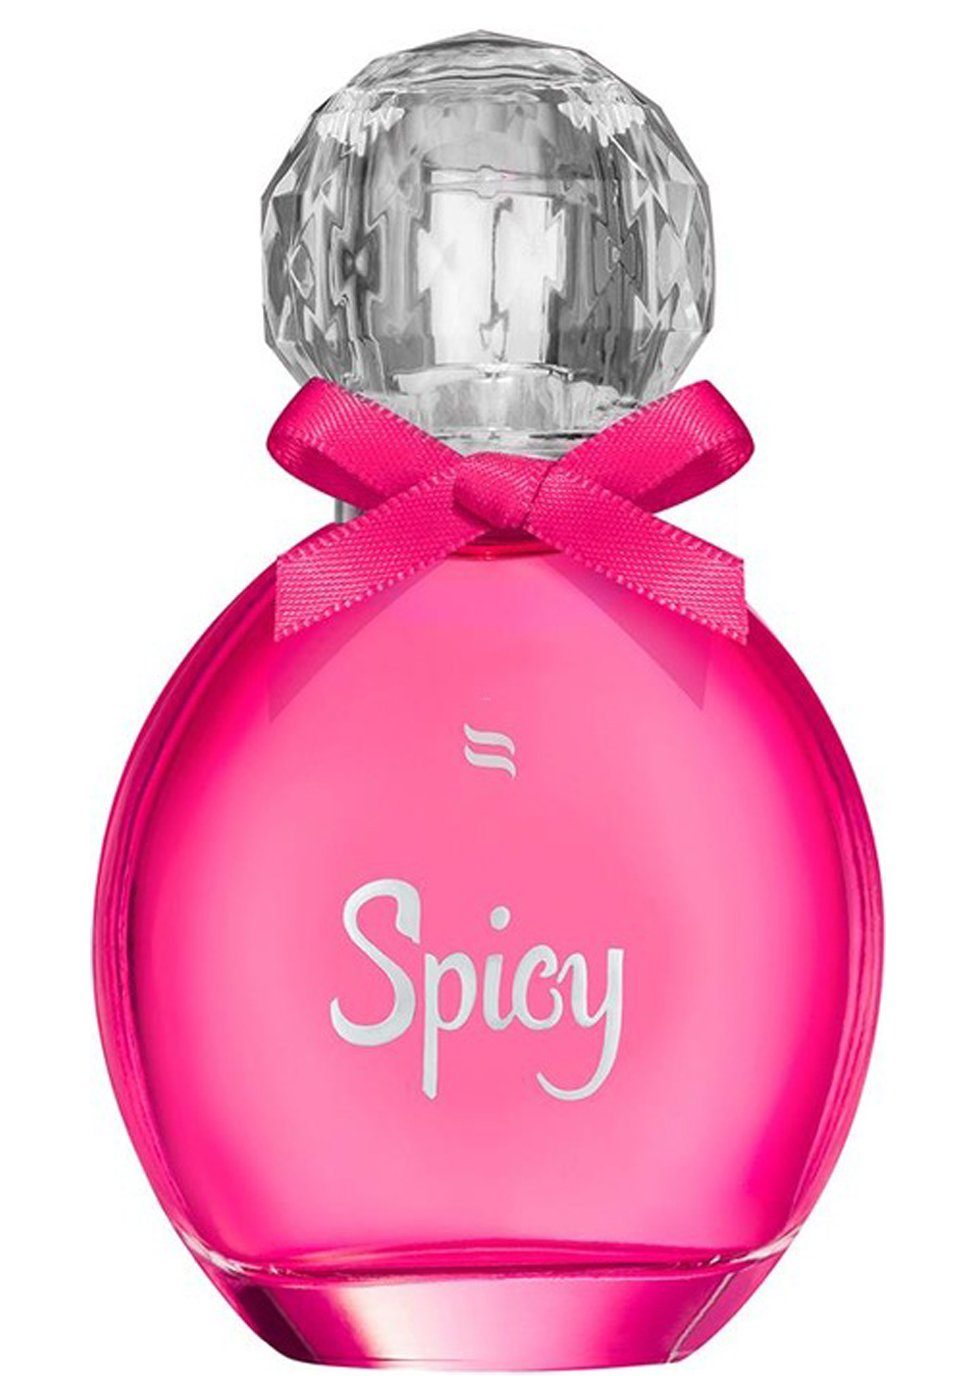 Spicy für die Obsessive mit - Pheromonen Parfum Körperspray Frau